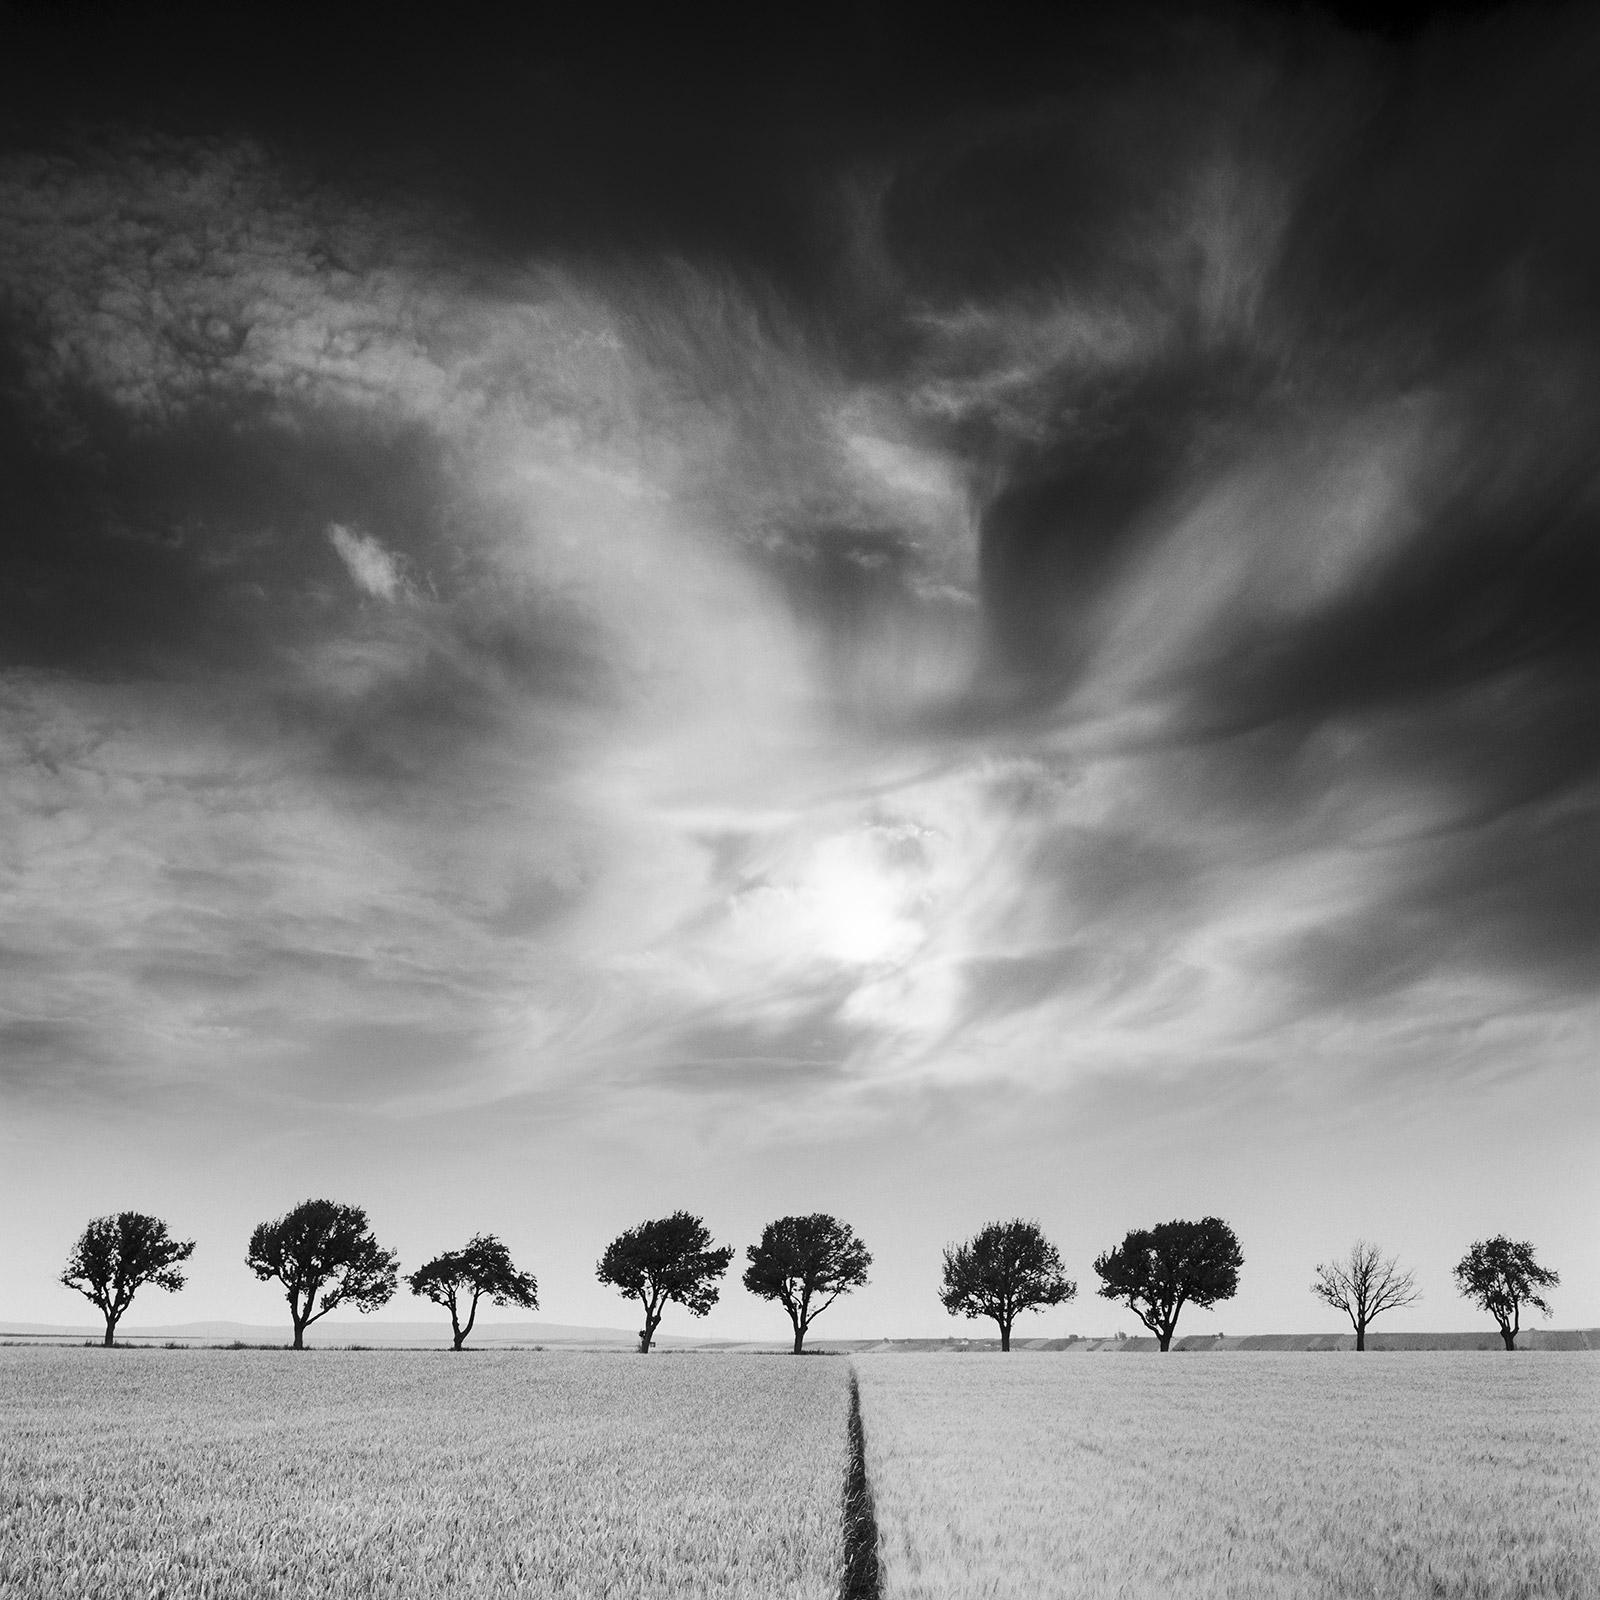 Landscape Photograph Gerald Berghammer - Cerisiers et ciel sombre, Autriche, noir et blanc, photographie d'art, paysage